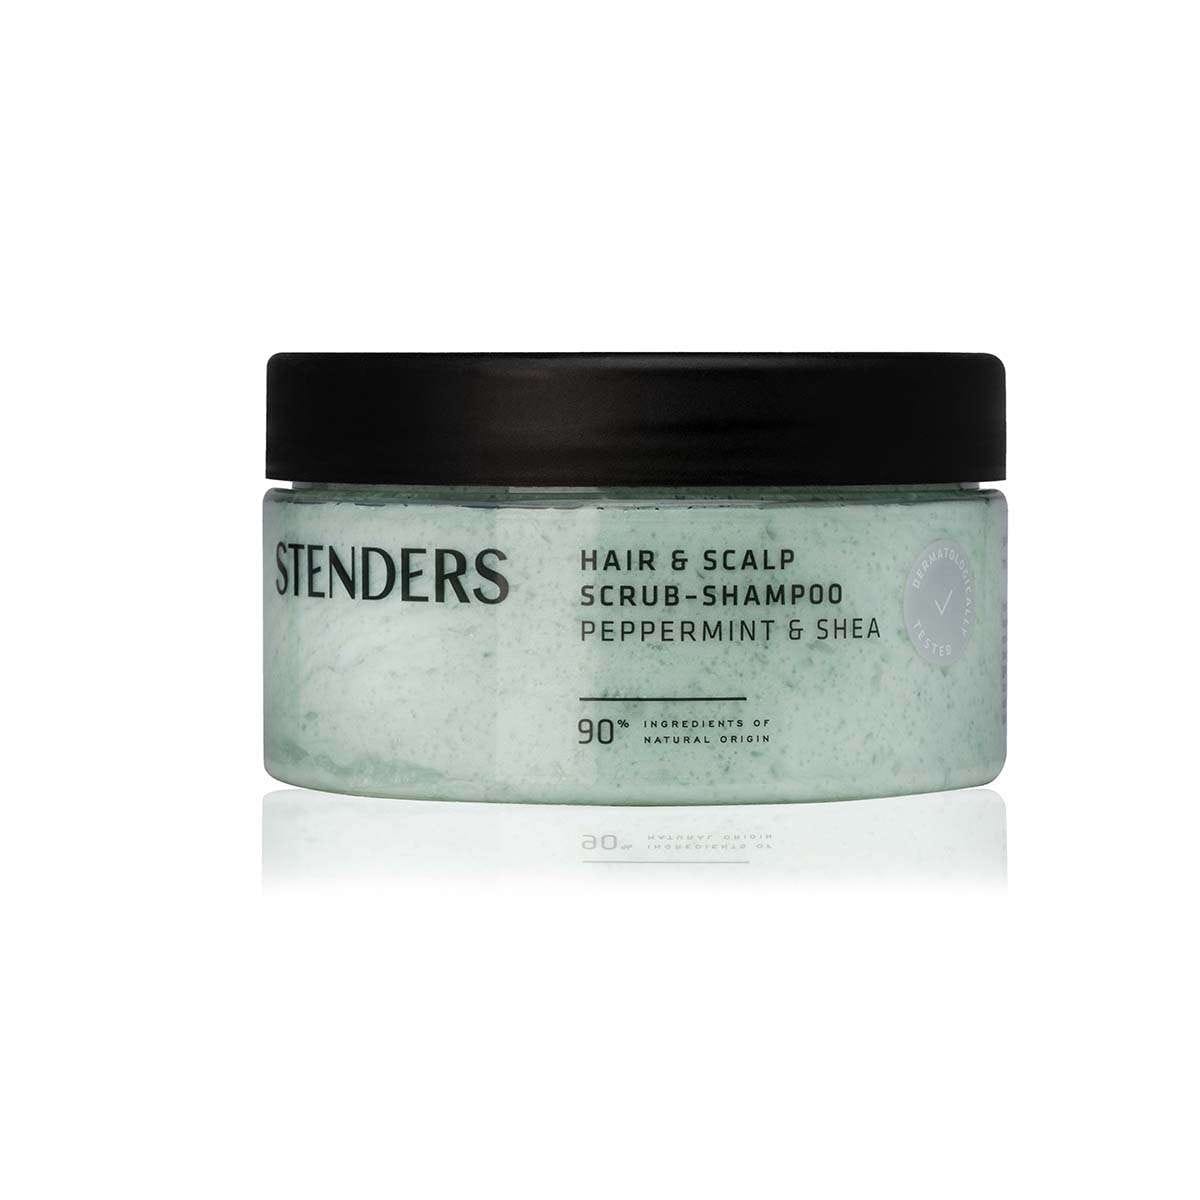 STENDERS Hair & scalp scrub-shampoo Peppermint & Shea